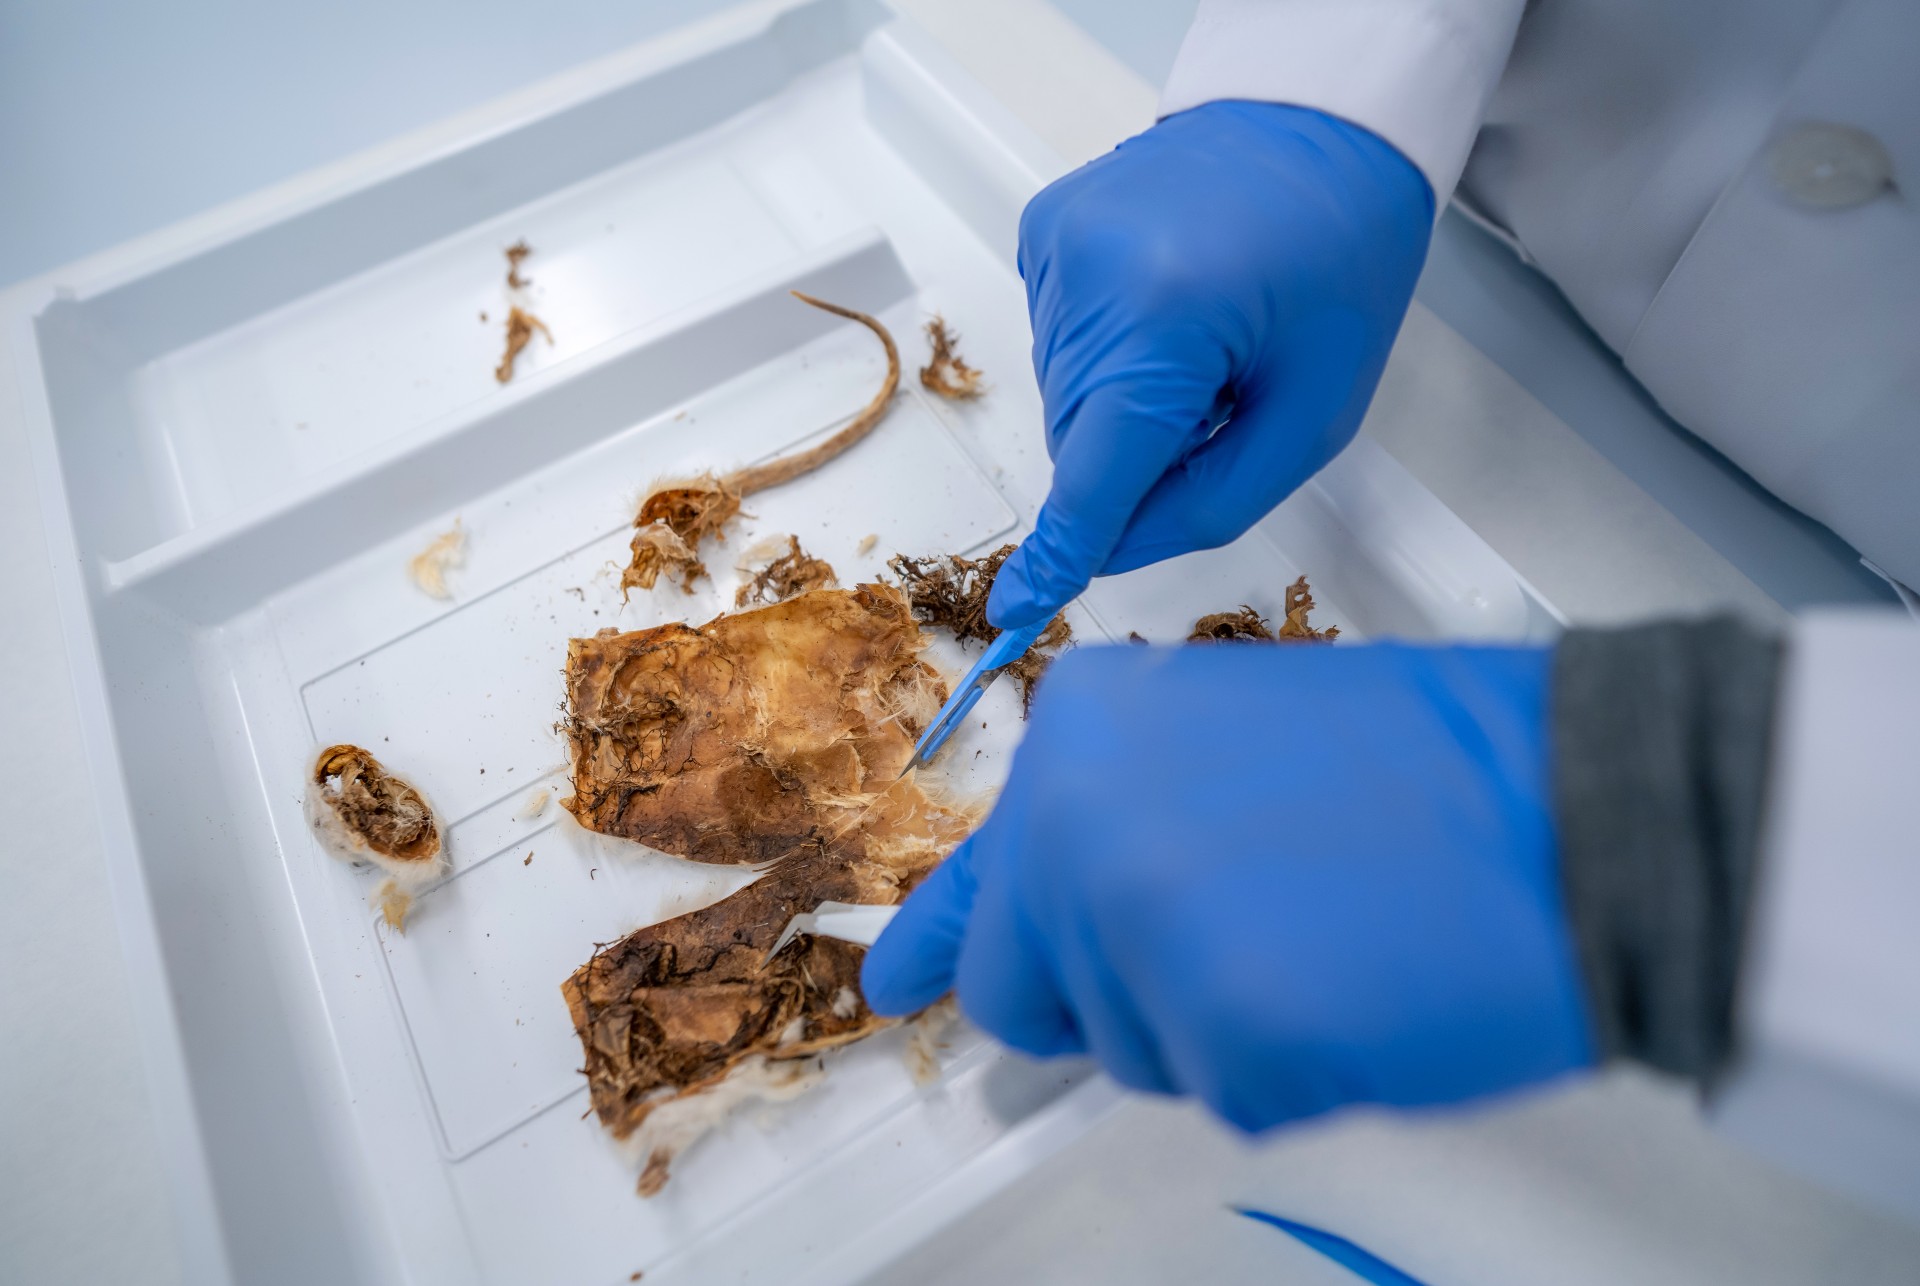 شرطة دبي تحدد زمن وفاة جثة مجهولة ومتحللة بالاستناد إلى علم الحشرات الجنائي